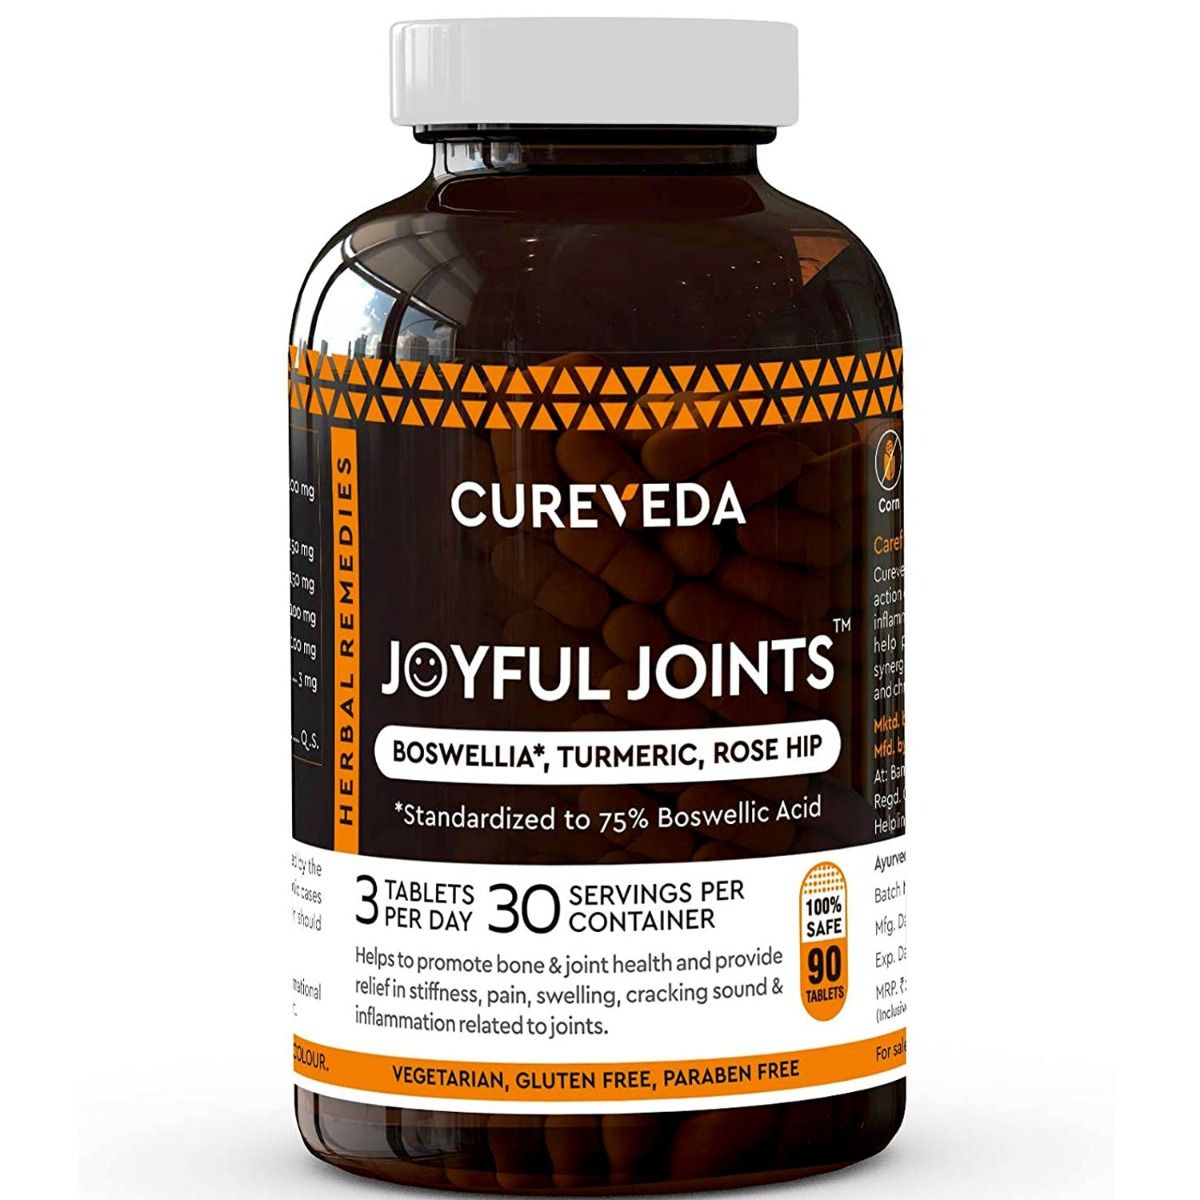 Buy Cureveda Joyful Joints, 90 Tablets Online